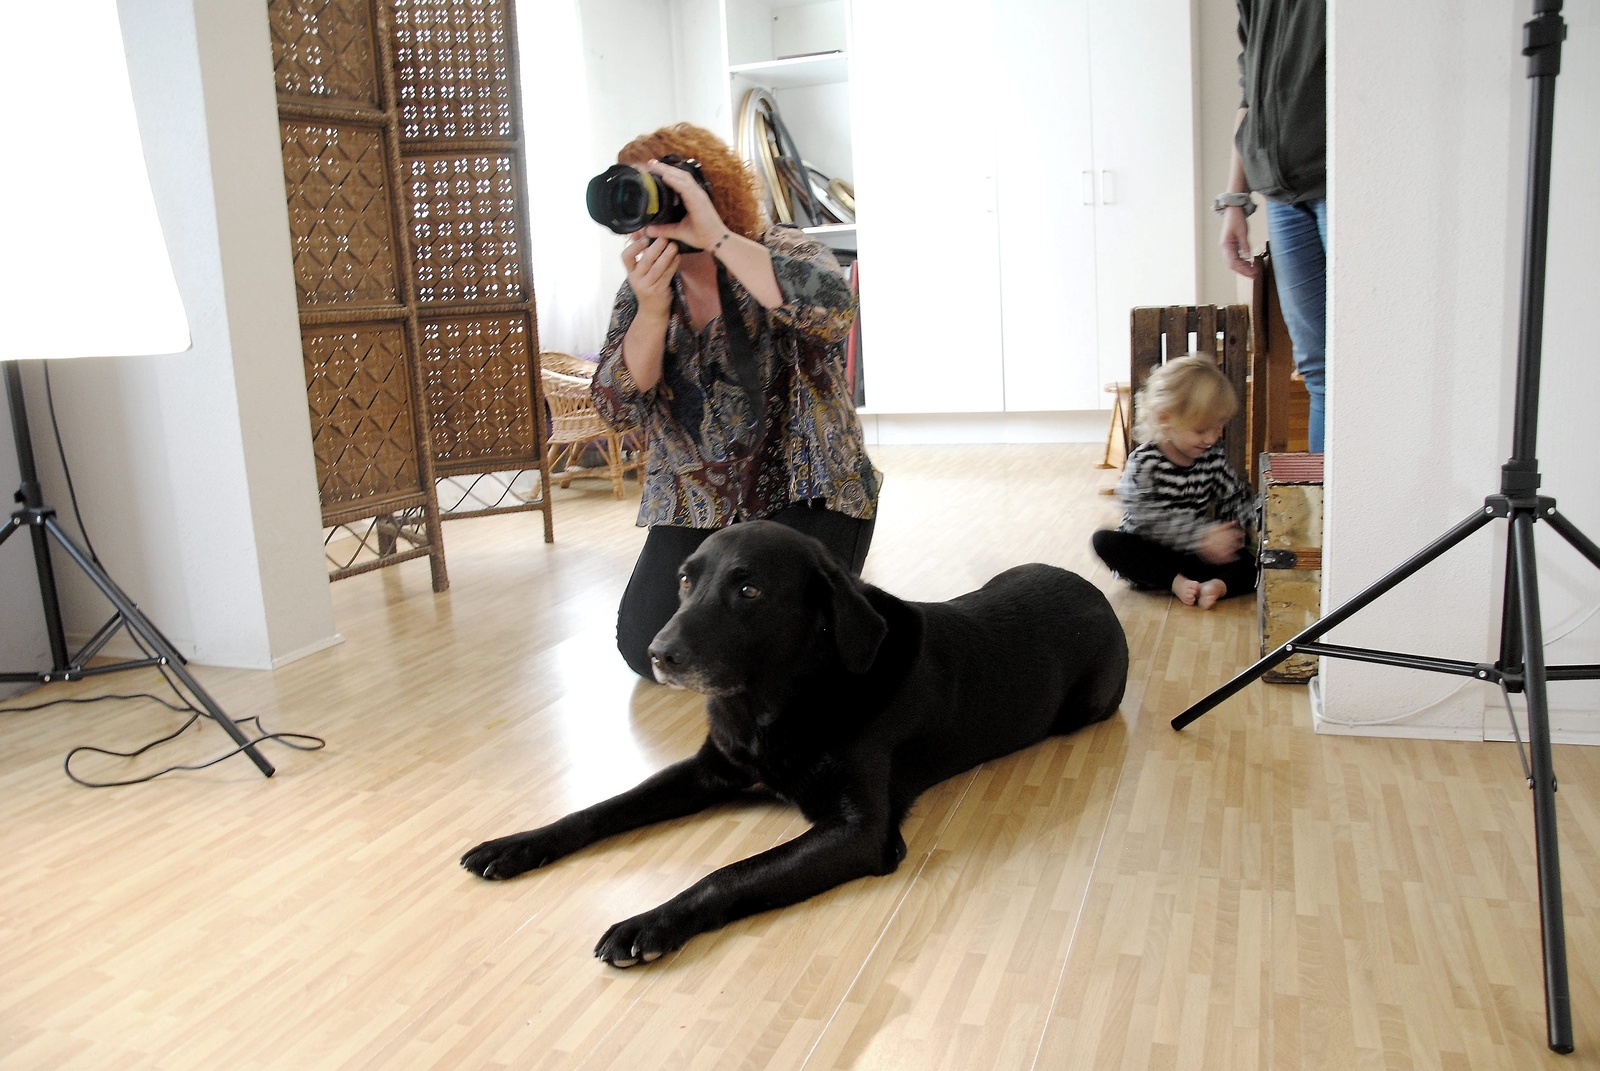 Matilda Ludvigssons fotoassistent, hunden Harry, hjälper ofta till när ett barn blivit ledset. Det kan räcka med att han visar sig så kommer glädjen tillbaka.